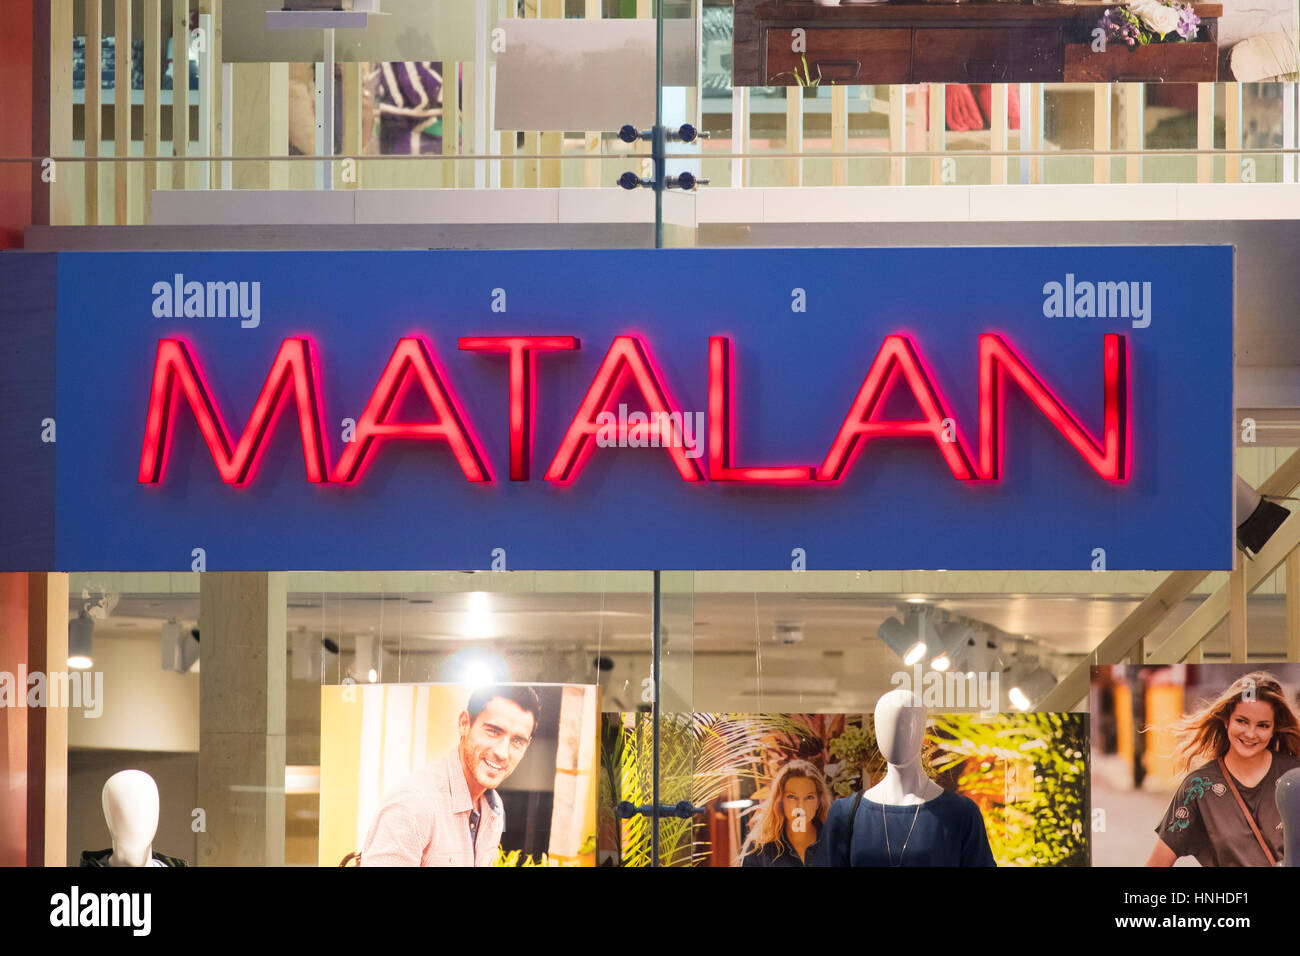 Matalan store sign logo. Stock Photo